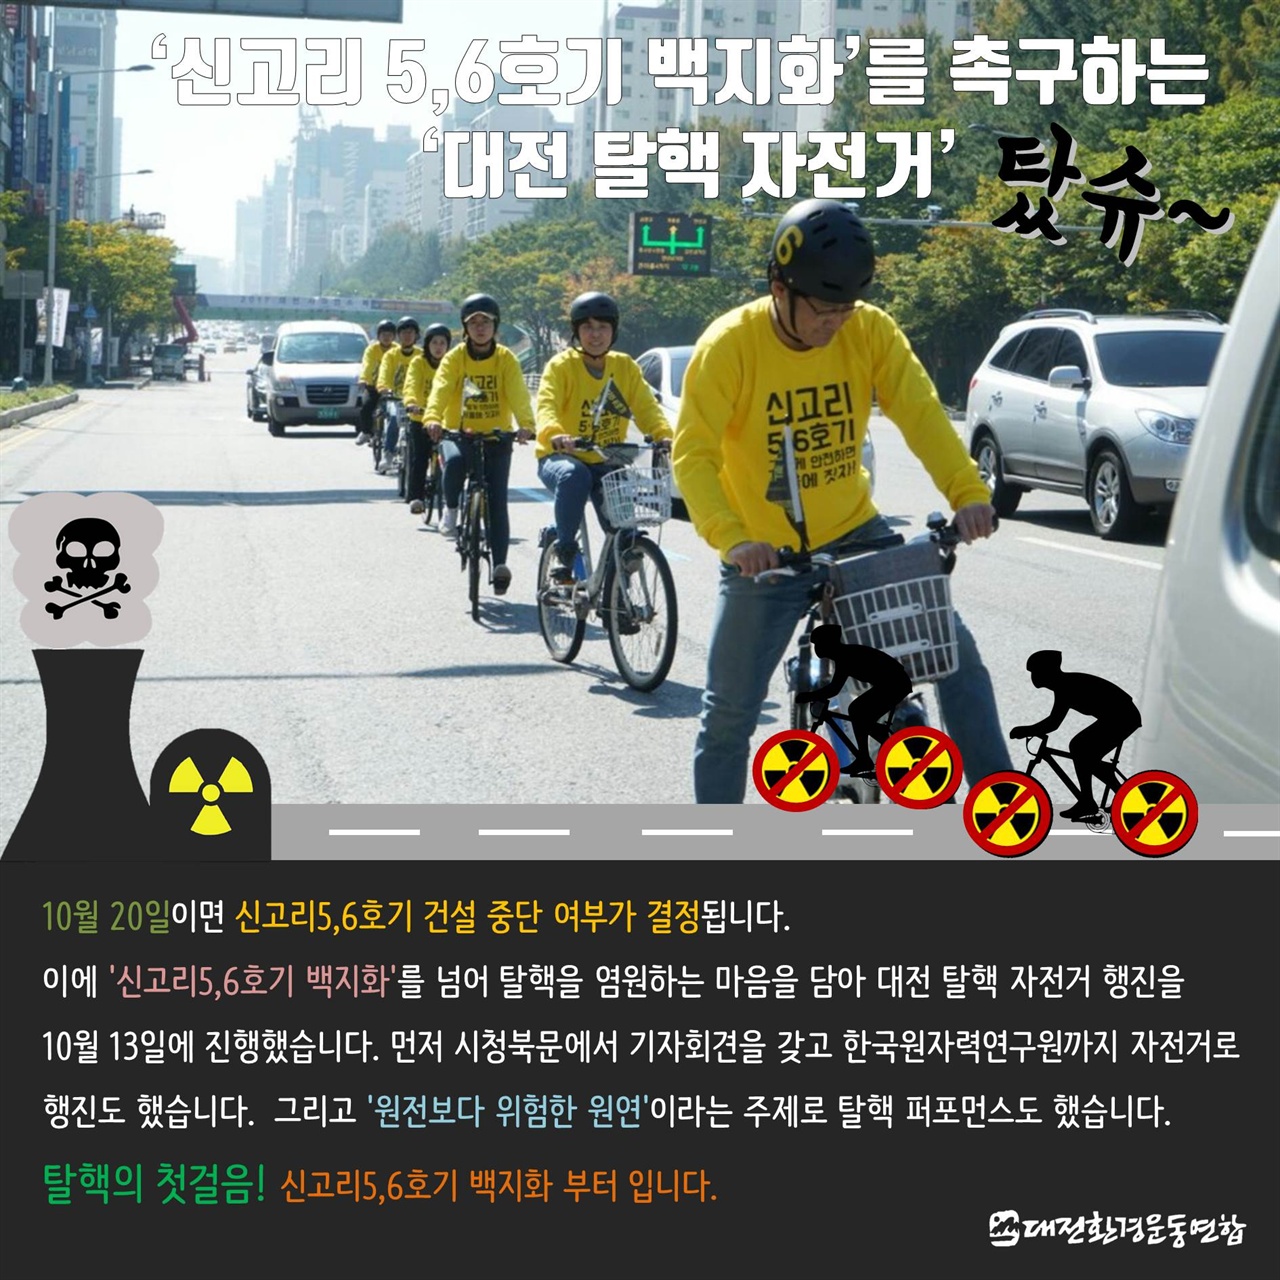 대전환경운동연합 활동가, 회원, 서울환경운동연합 활동가가 함께 탈핵을 염원하는 마음으로 대전에서 자전거 행진을 진행 하였다.